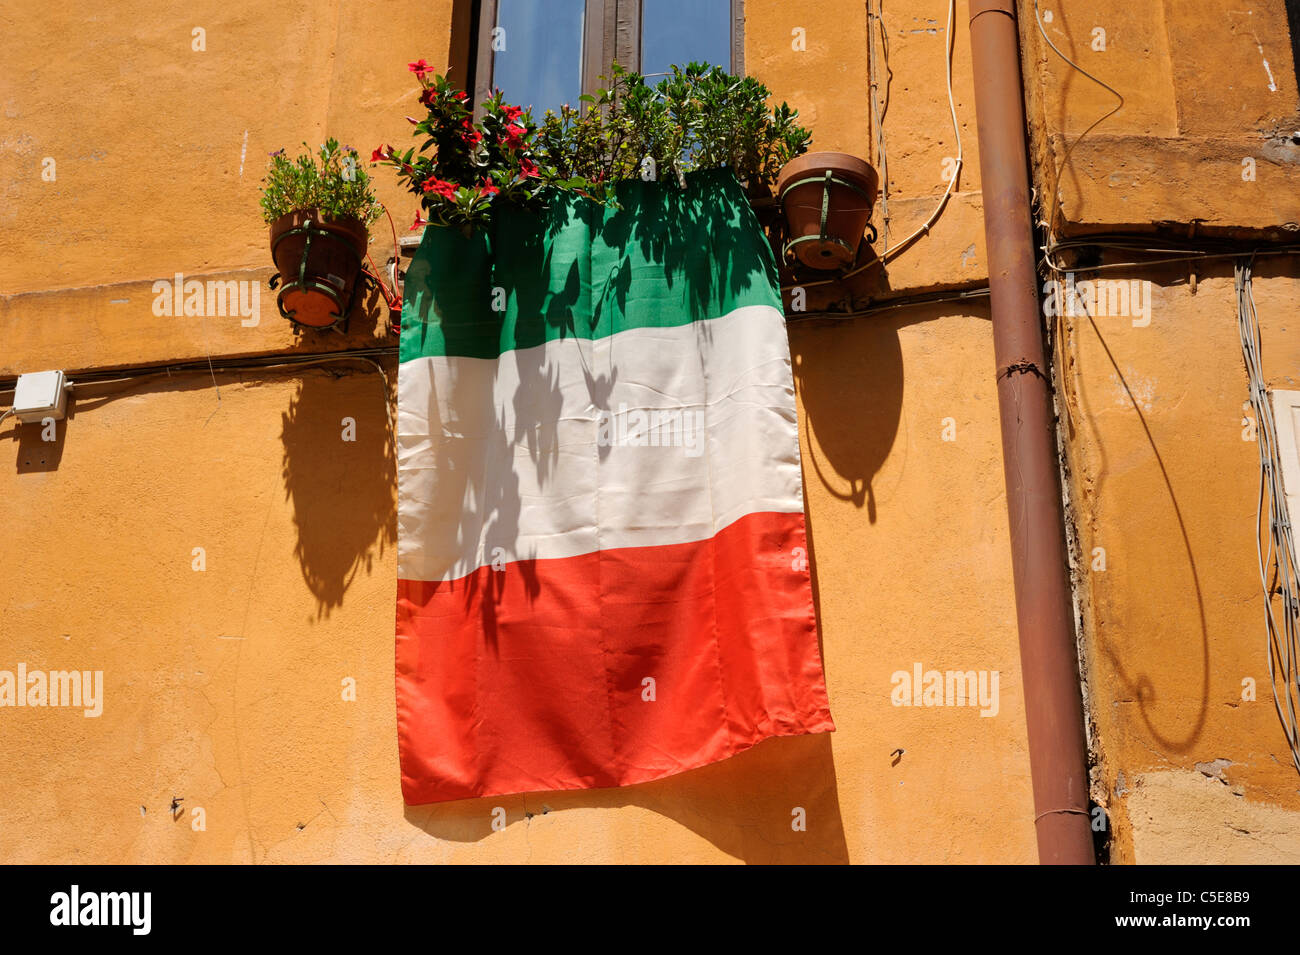 italy, rome, window, italian flag Stock Photo